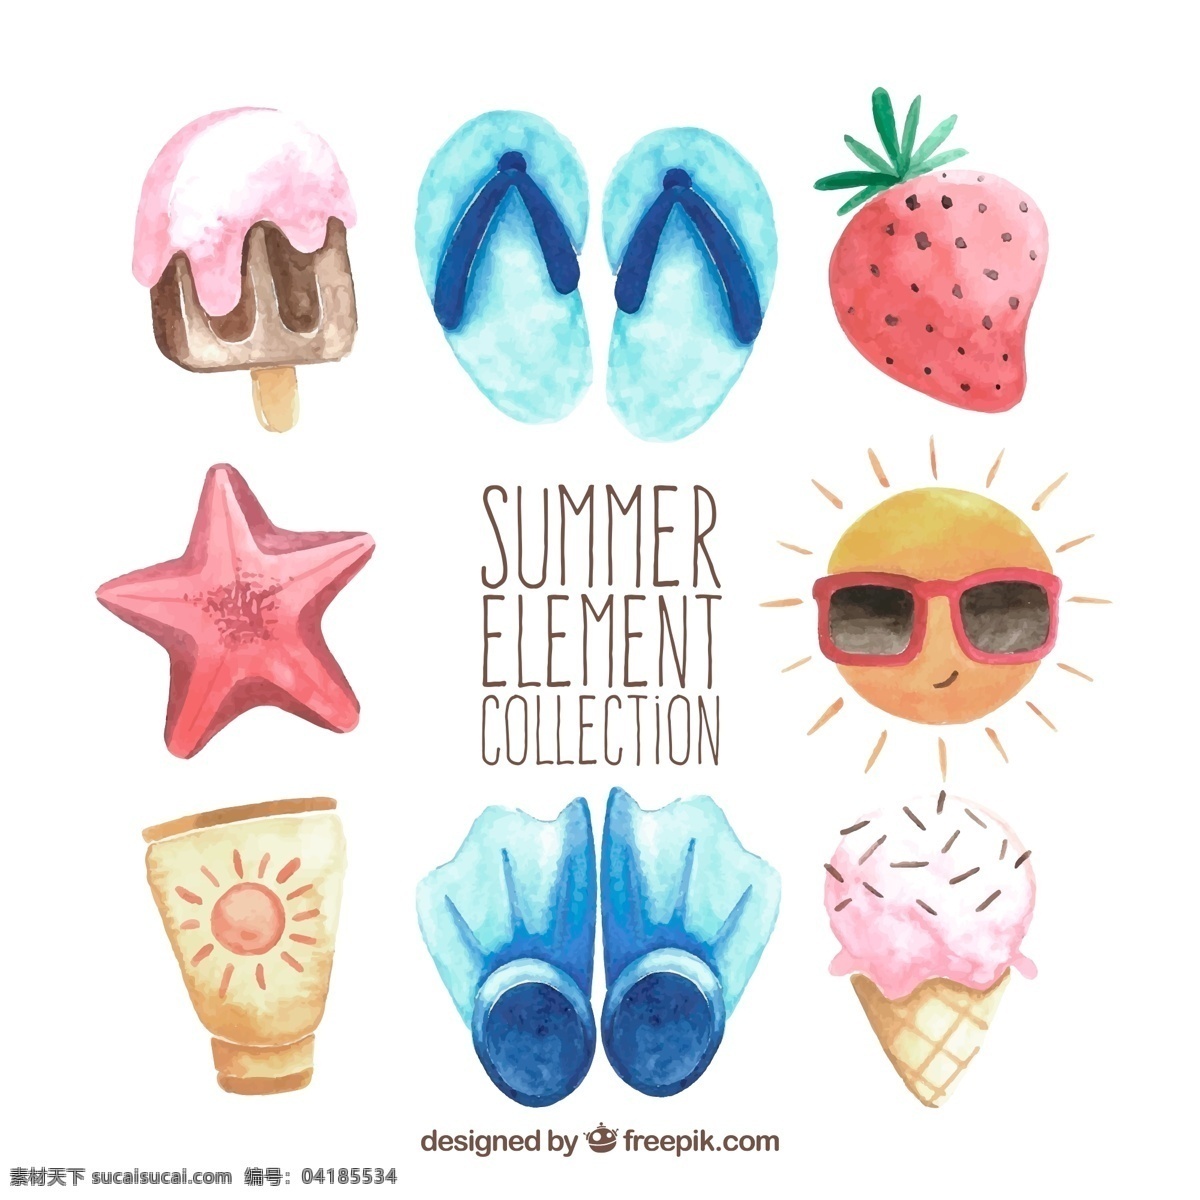 彩绘 夏季 度假 元素 8款 冰淇淋 草莓 星星 太阳 矢量 卡通 生活百科 休闲娱乐